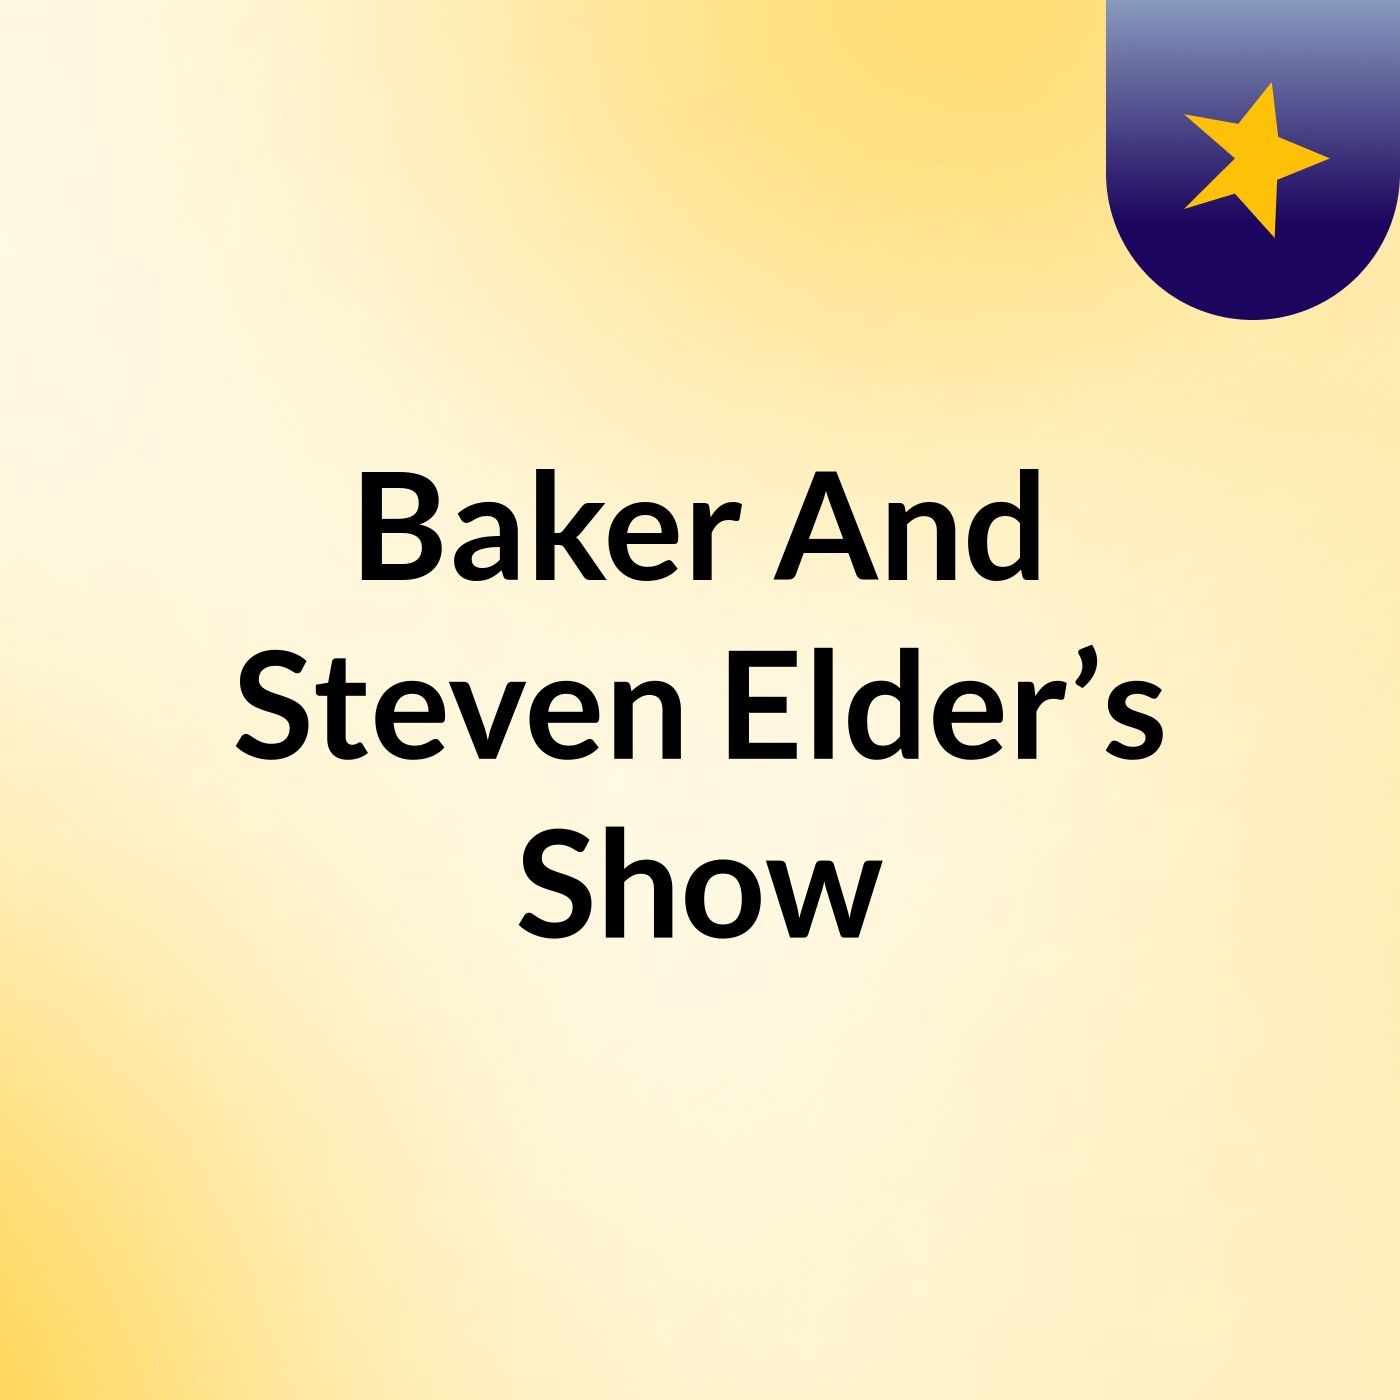 Baker And Steven Elder’s Show